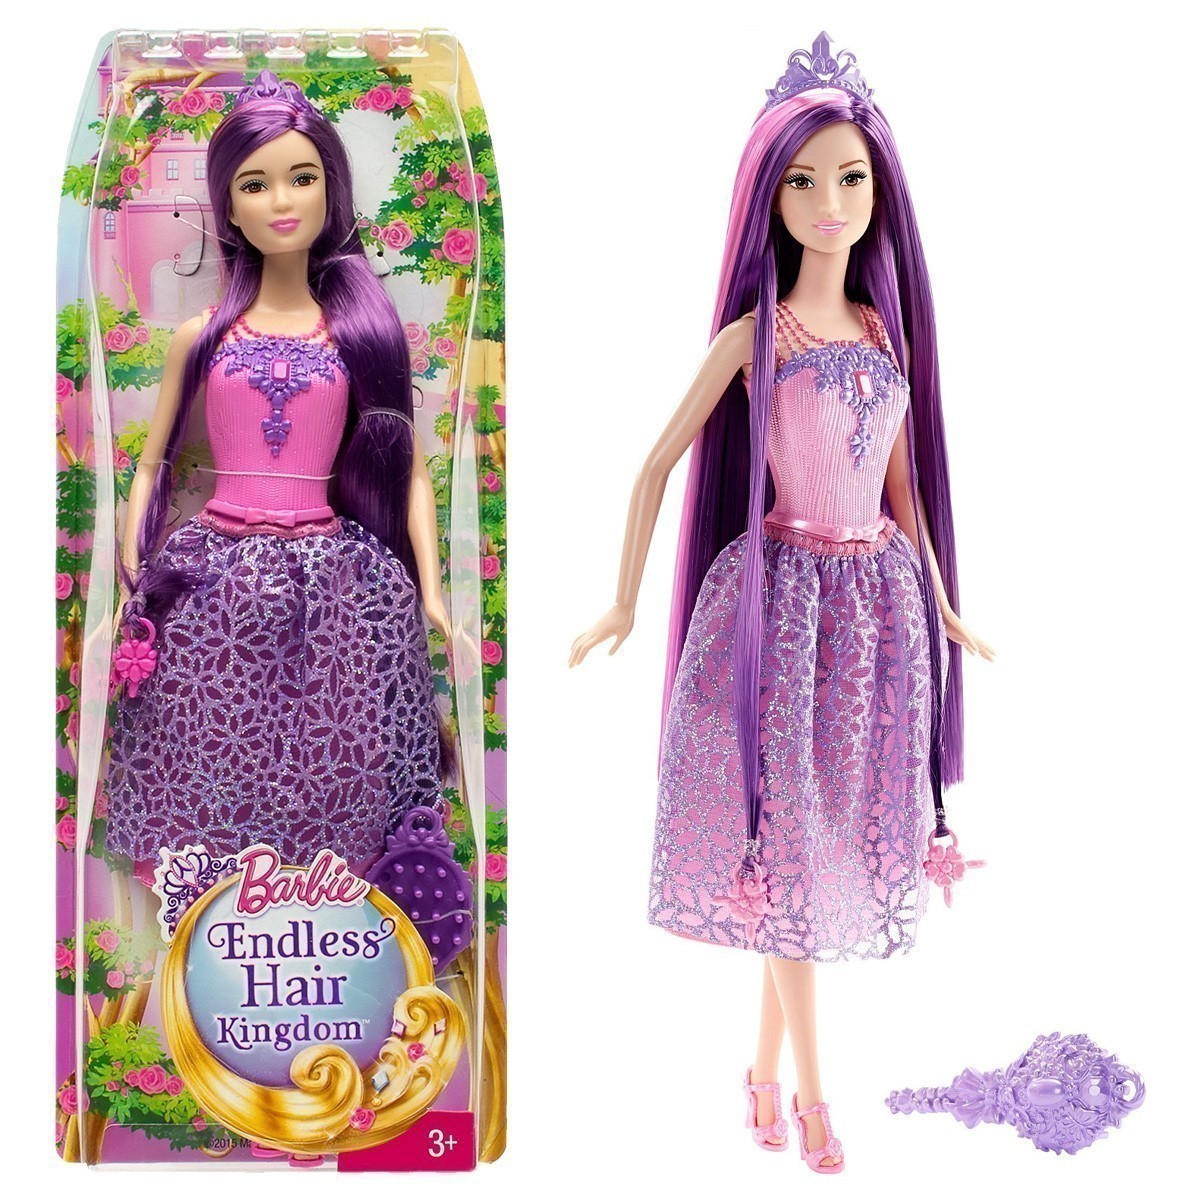 Barbie - Endless Hair Kingdom - Purple Princess Doll